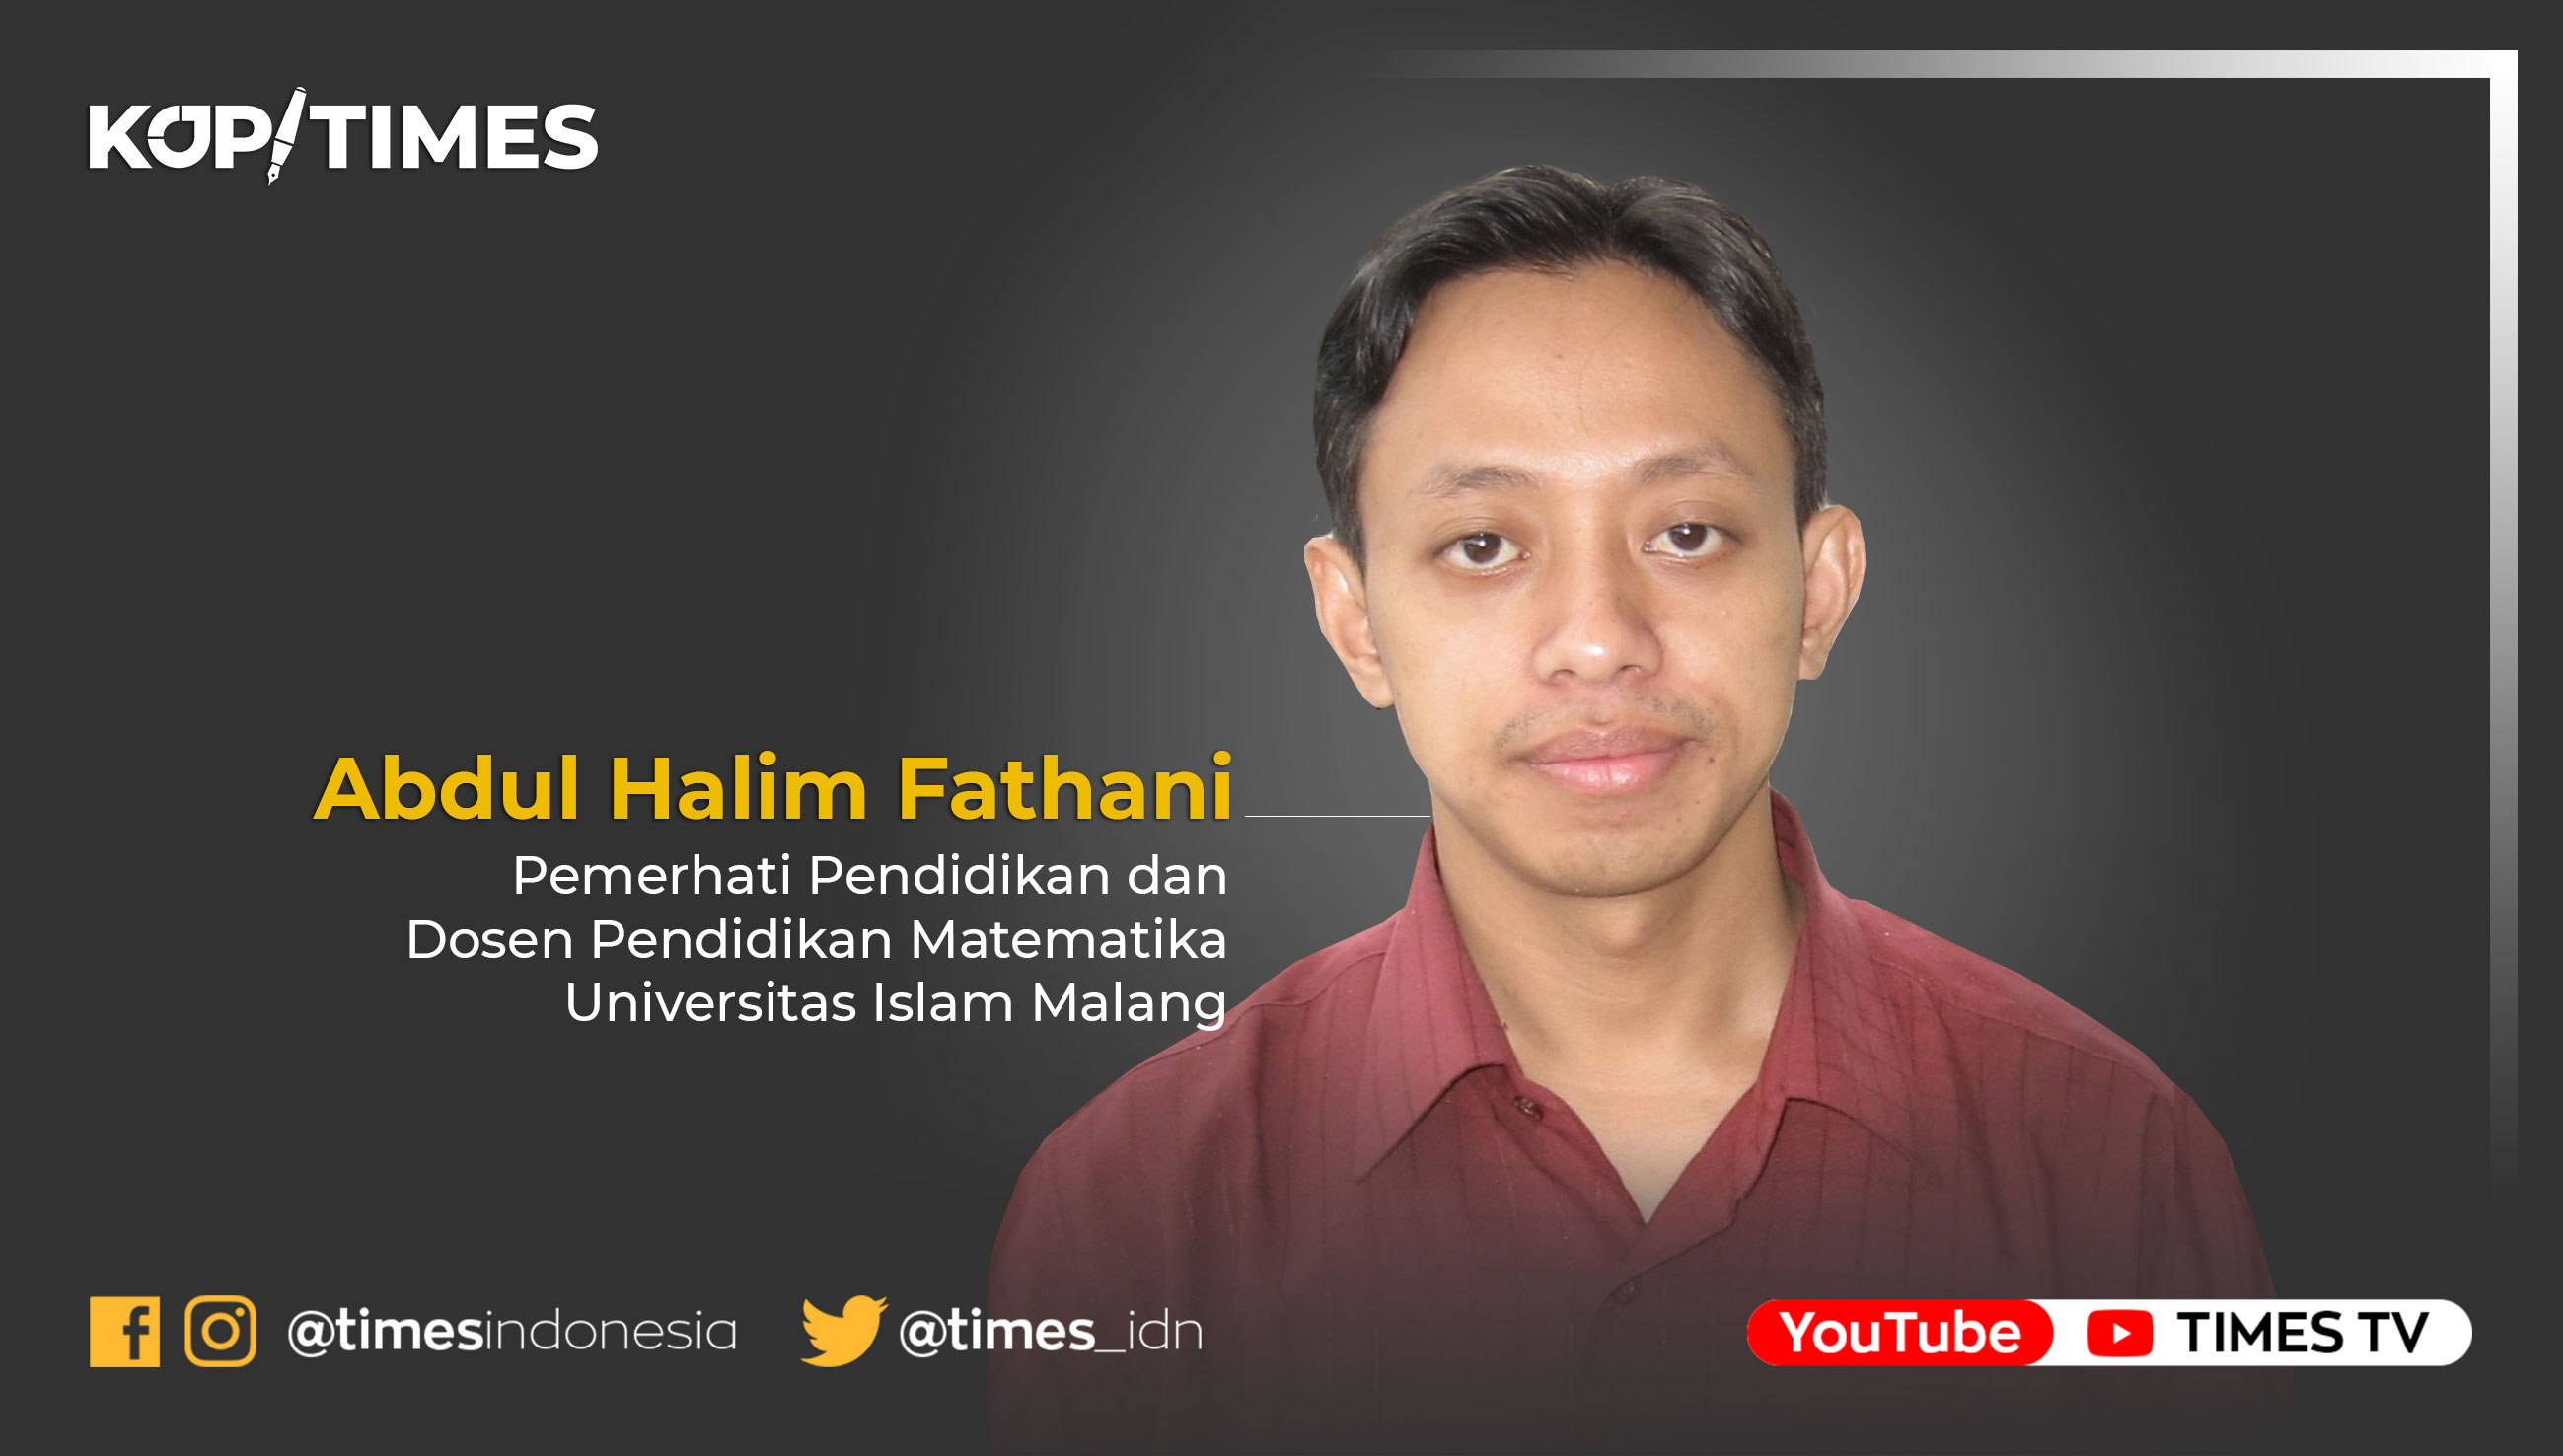 Abdul Halim Fathani, Pemerhati Pendidikan dan Dosen Pendidikan Matematika Universitas Islam Malang